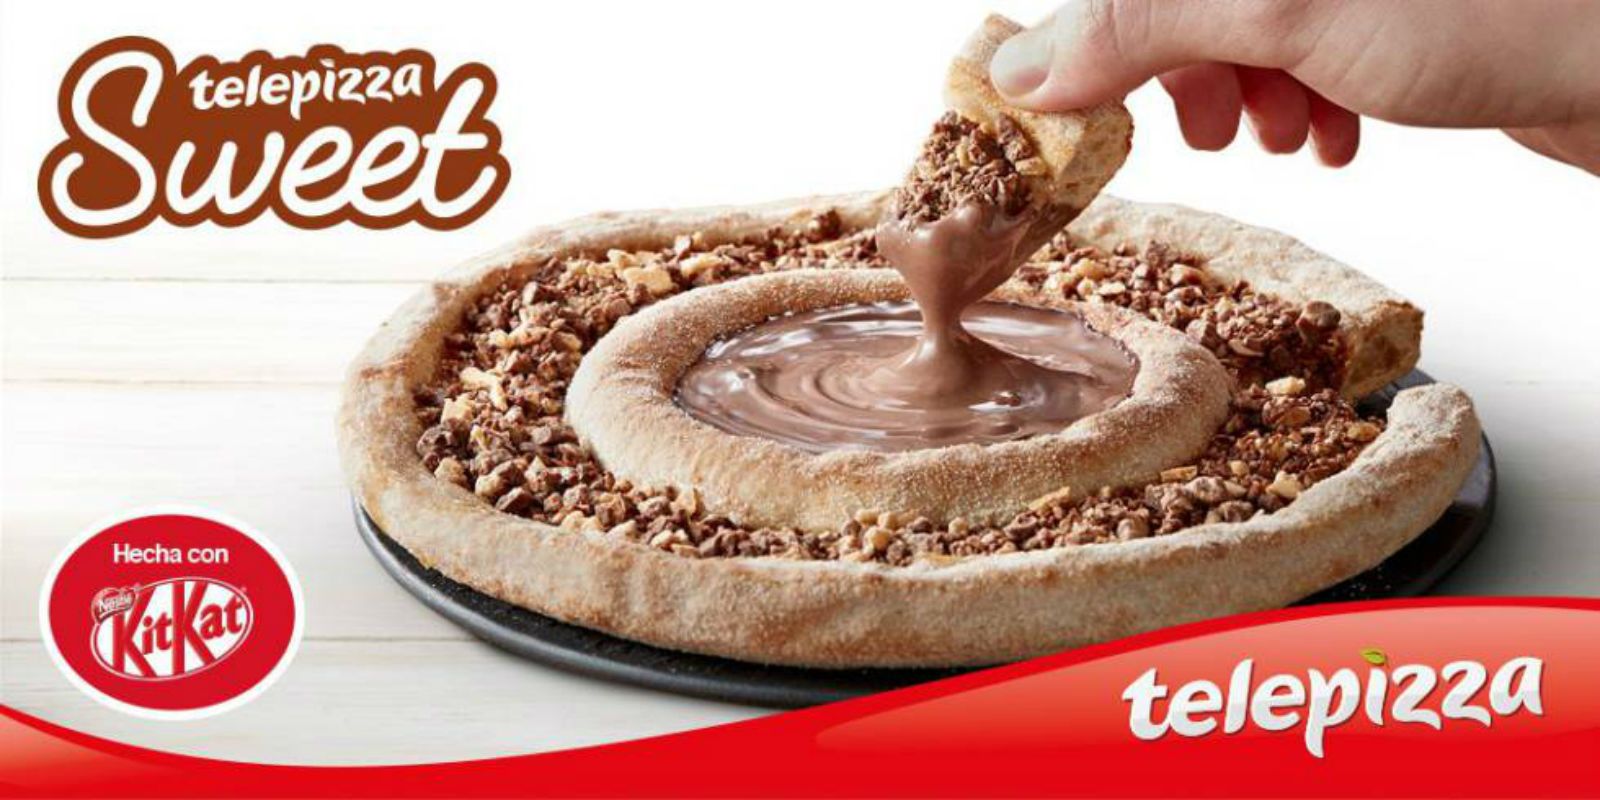 TelePizza i KitKat s'uneixen per fer una nova pizza